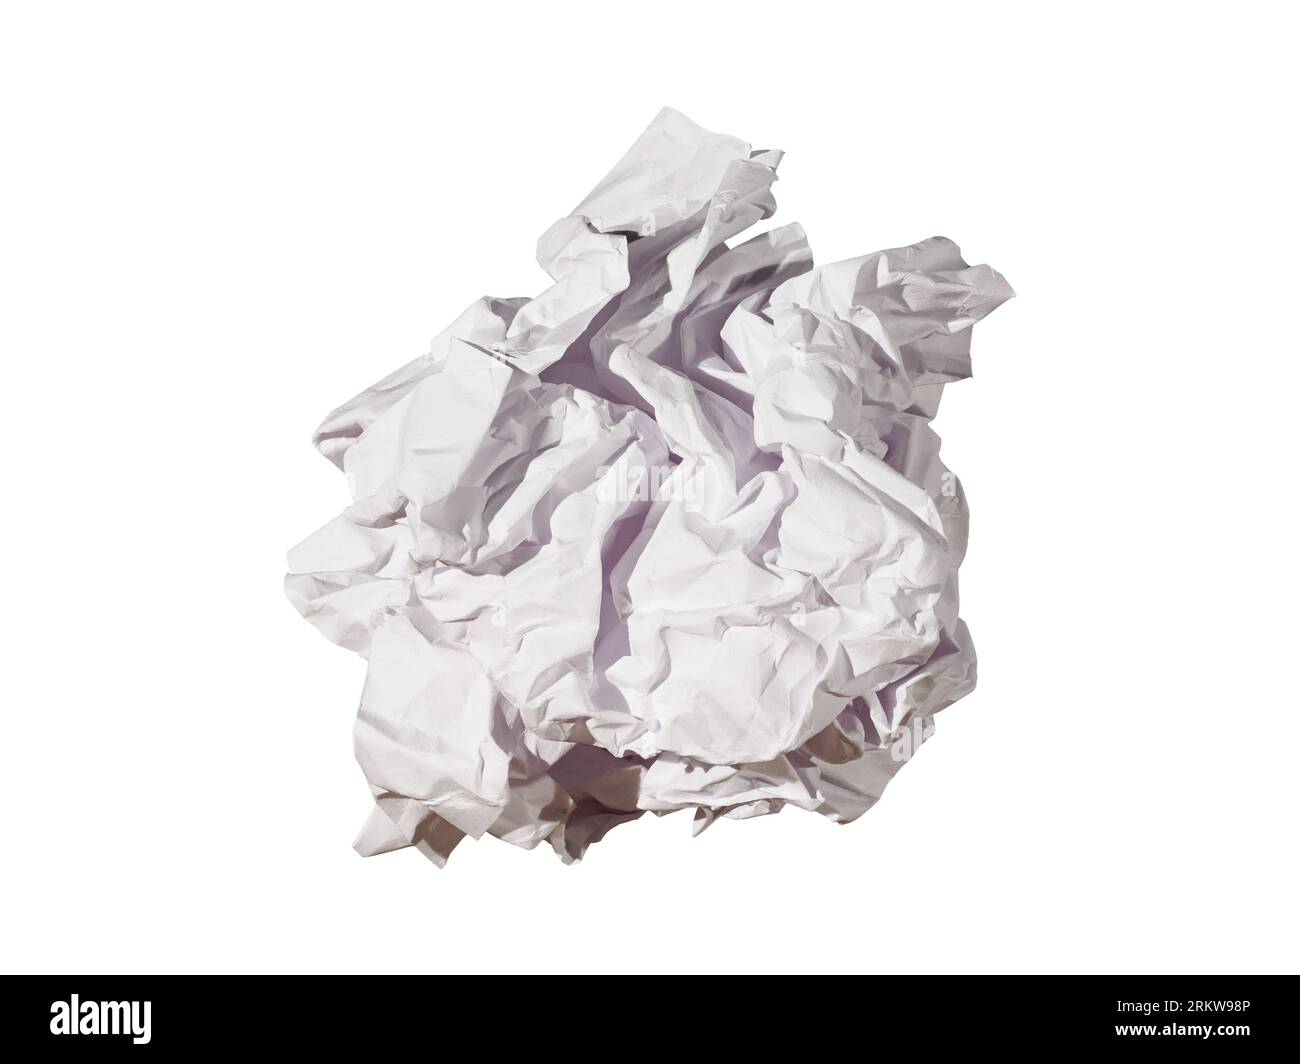 Una palla di carta schiacciata come concetto di spazzatura isolata su uno sfondo bianco Foto Stock